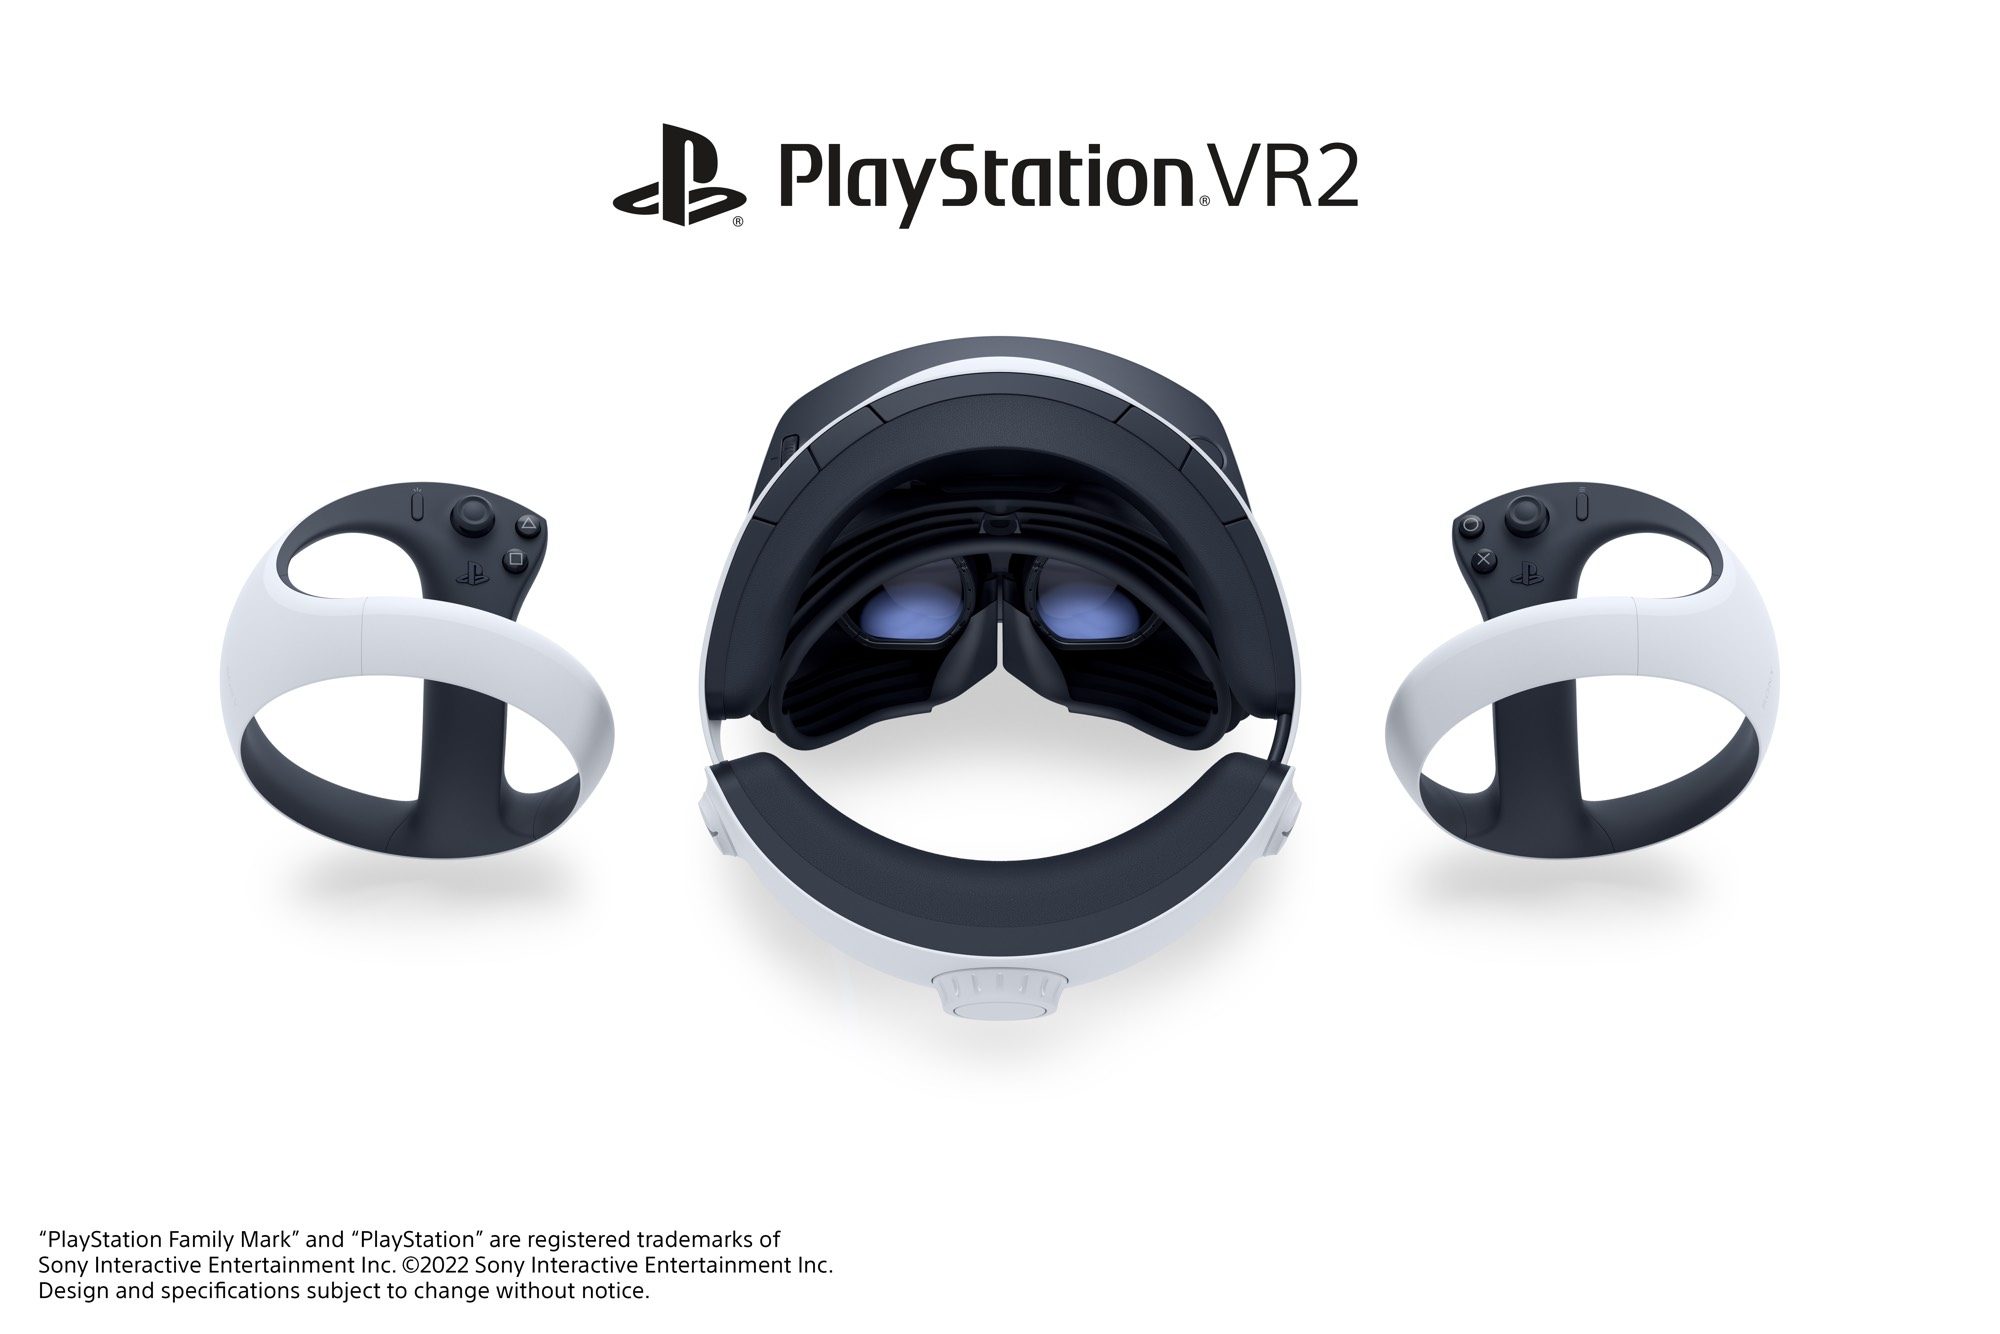 Marco de gafas ABS para Sony Ps4 PS VR, lentes de protección de